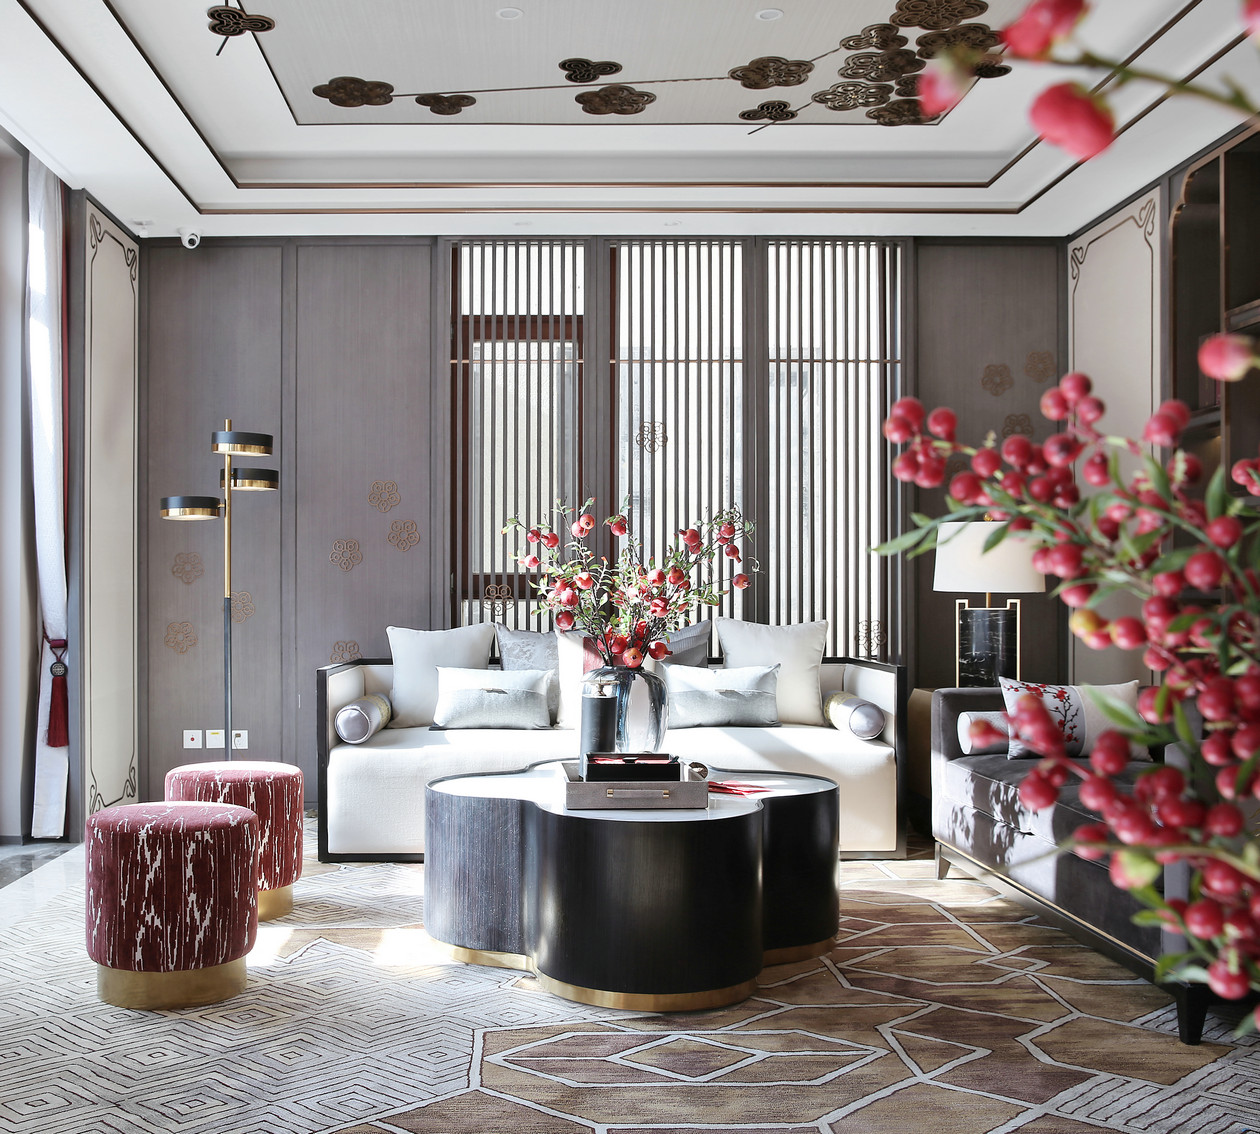 客厅以古朴的中式风情铺陈，素灰色背景搭配白色沙发，使得空间充满了儒雅的中式格调。